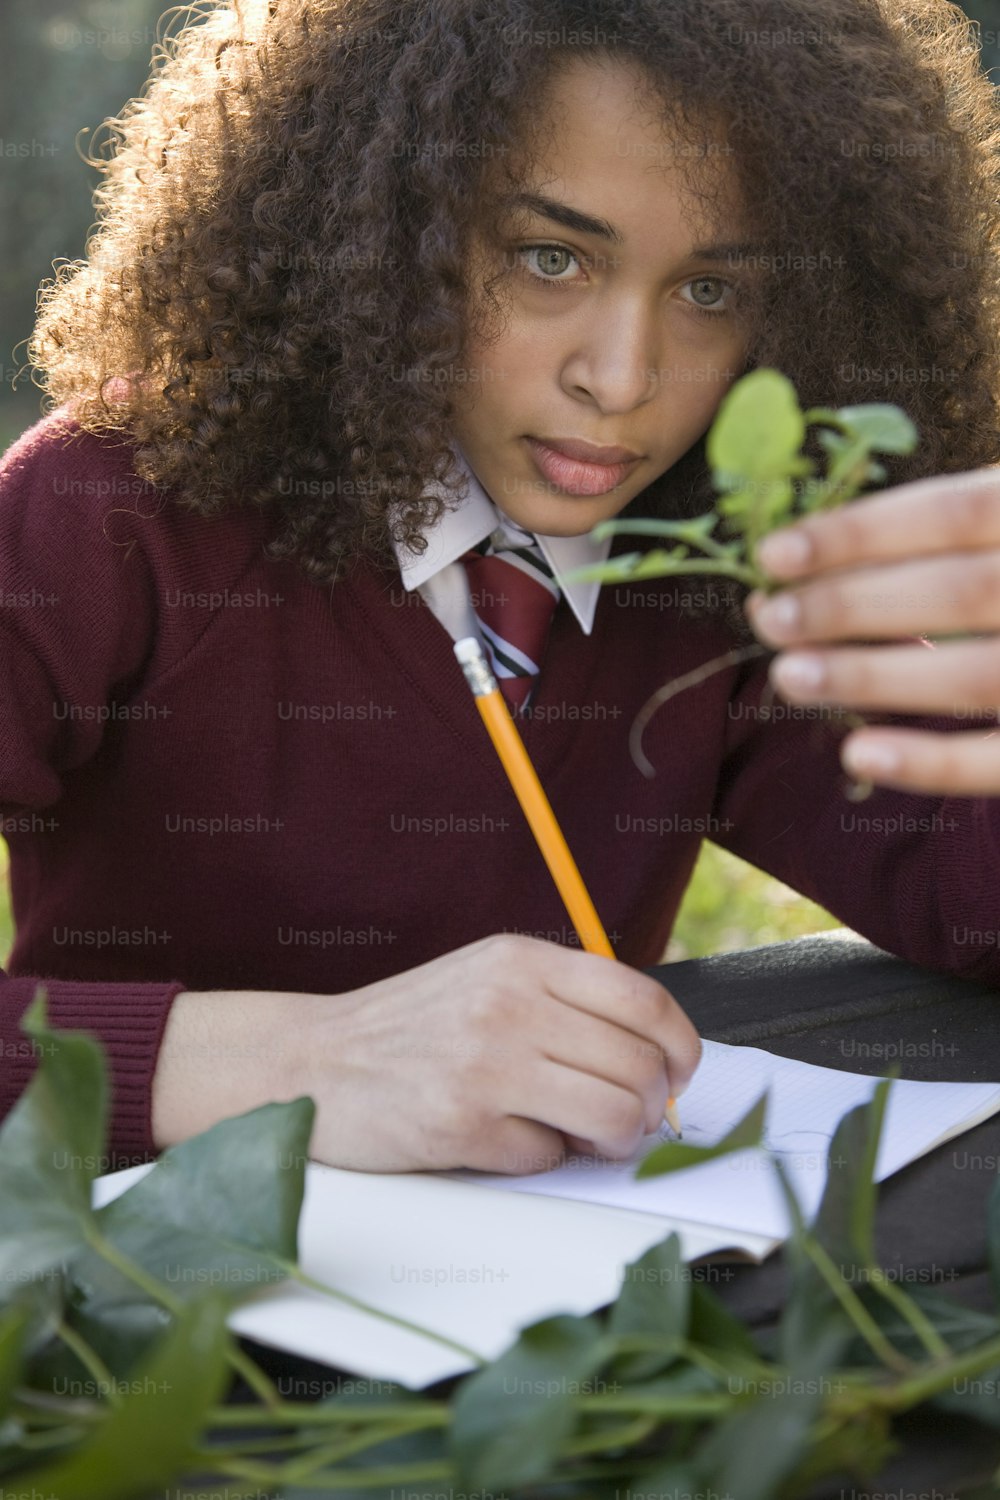 Una mujer joven sentada en una mesa escribiendo en un pedazo de papel